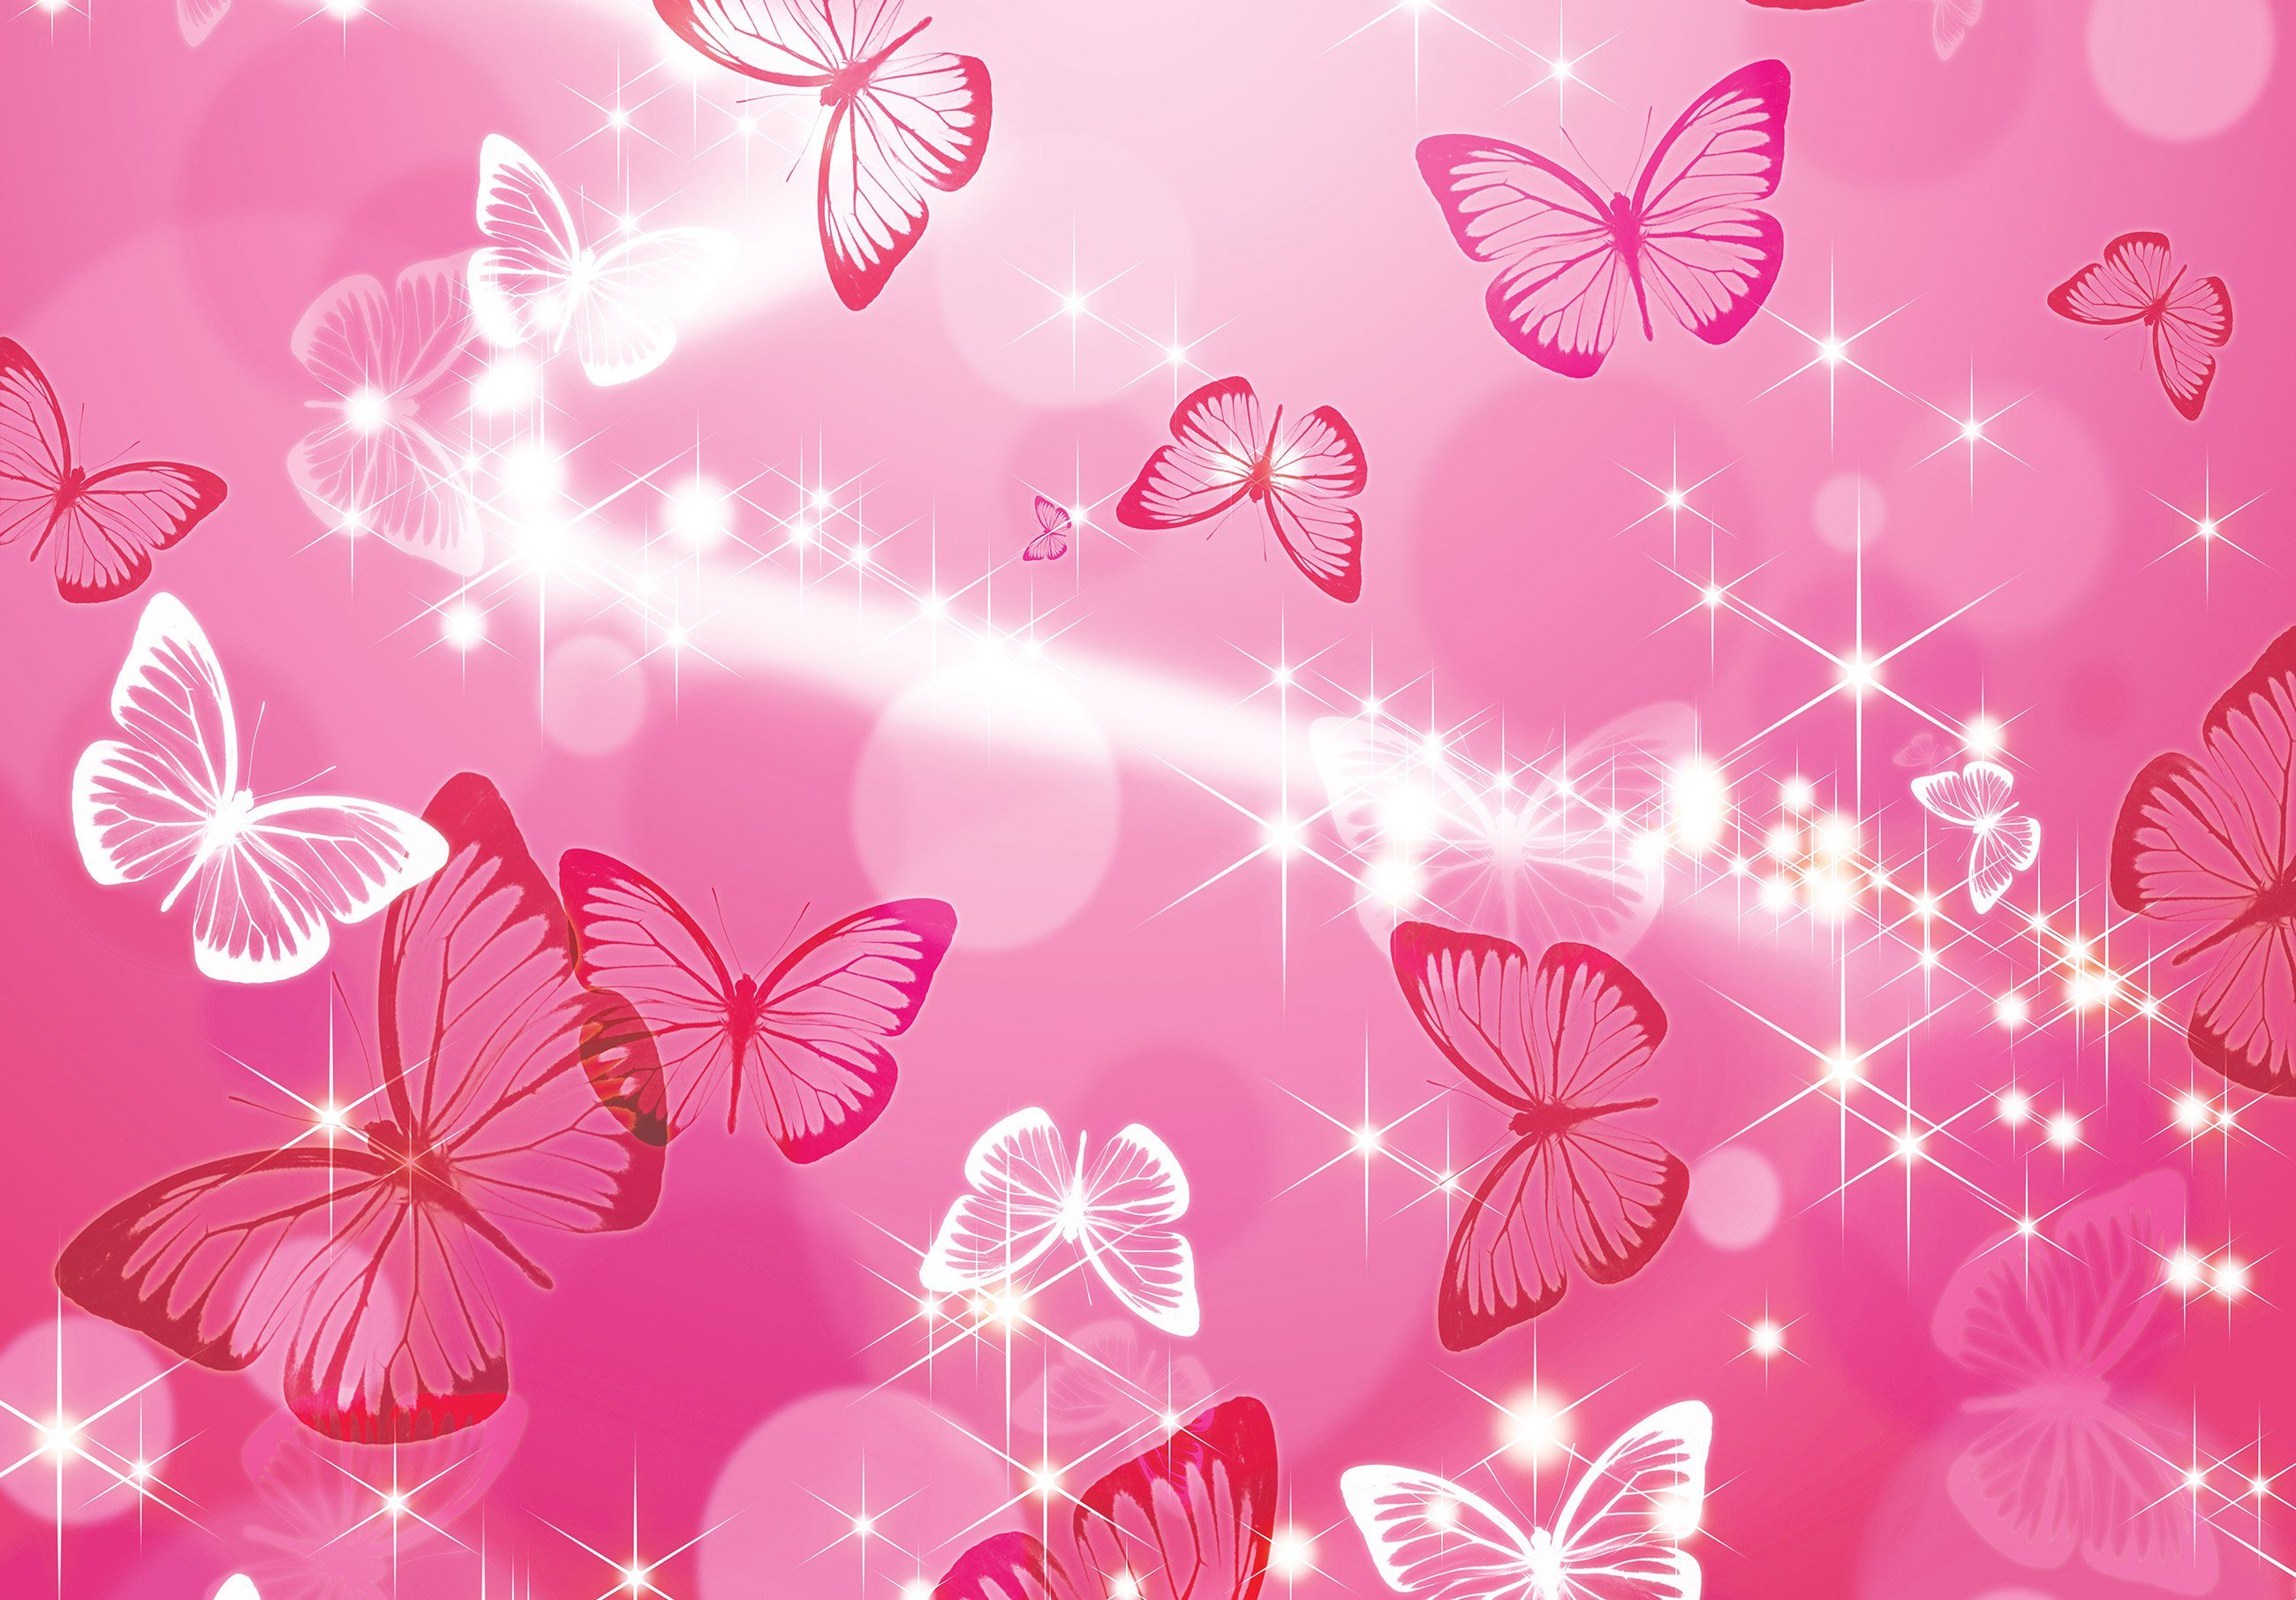 Mädchen Rosa Magie Kleister Wandtapete Motivtapete, inklusive Schmetterlinge Vlies Schmetterlinge, Wallarena Babyzimmer Mädchenzimmer Fototapete Vliestapete oder Kinderzimmer Tapete für Vliestapete Glatt, Stern